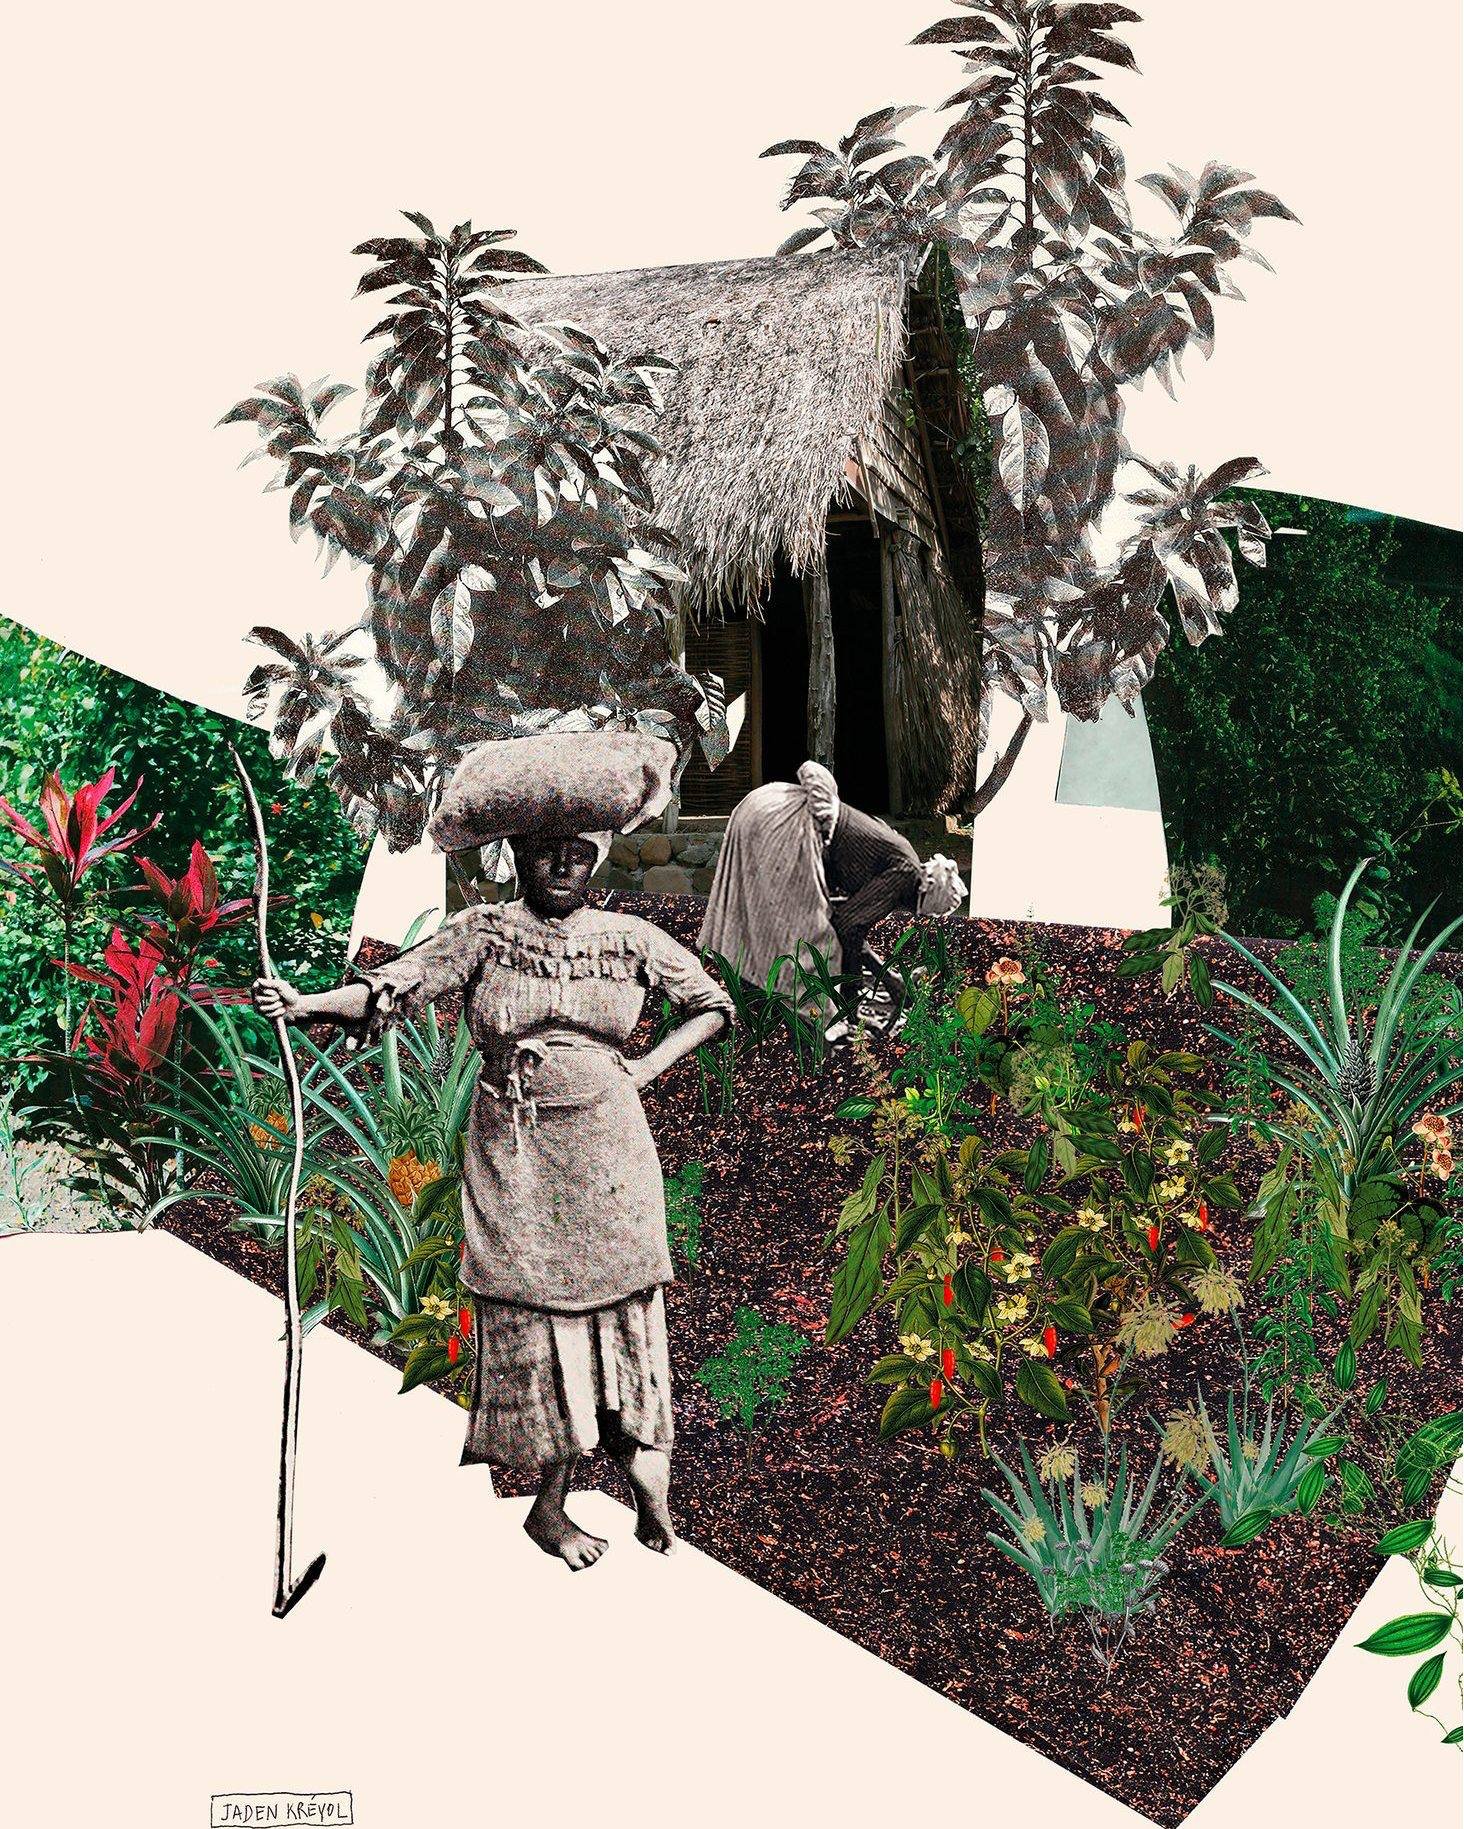 Se r&eacute;approprier l'histoire culturelle post-coloniale

Ouvrir un imaginaire nouveau de l&rsquo;histoire des Antilles &agrave; travers la vision de dach&amp;zephir.
Des images expos&eacute;es dans le cadre des Rencontres Photographiques de Guyan